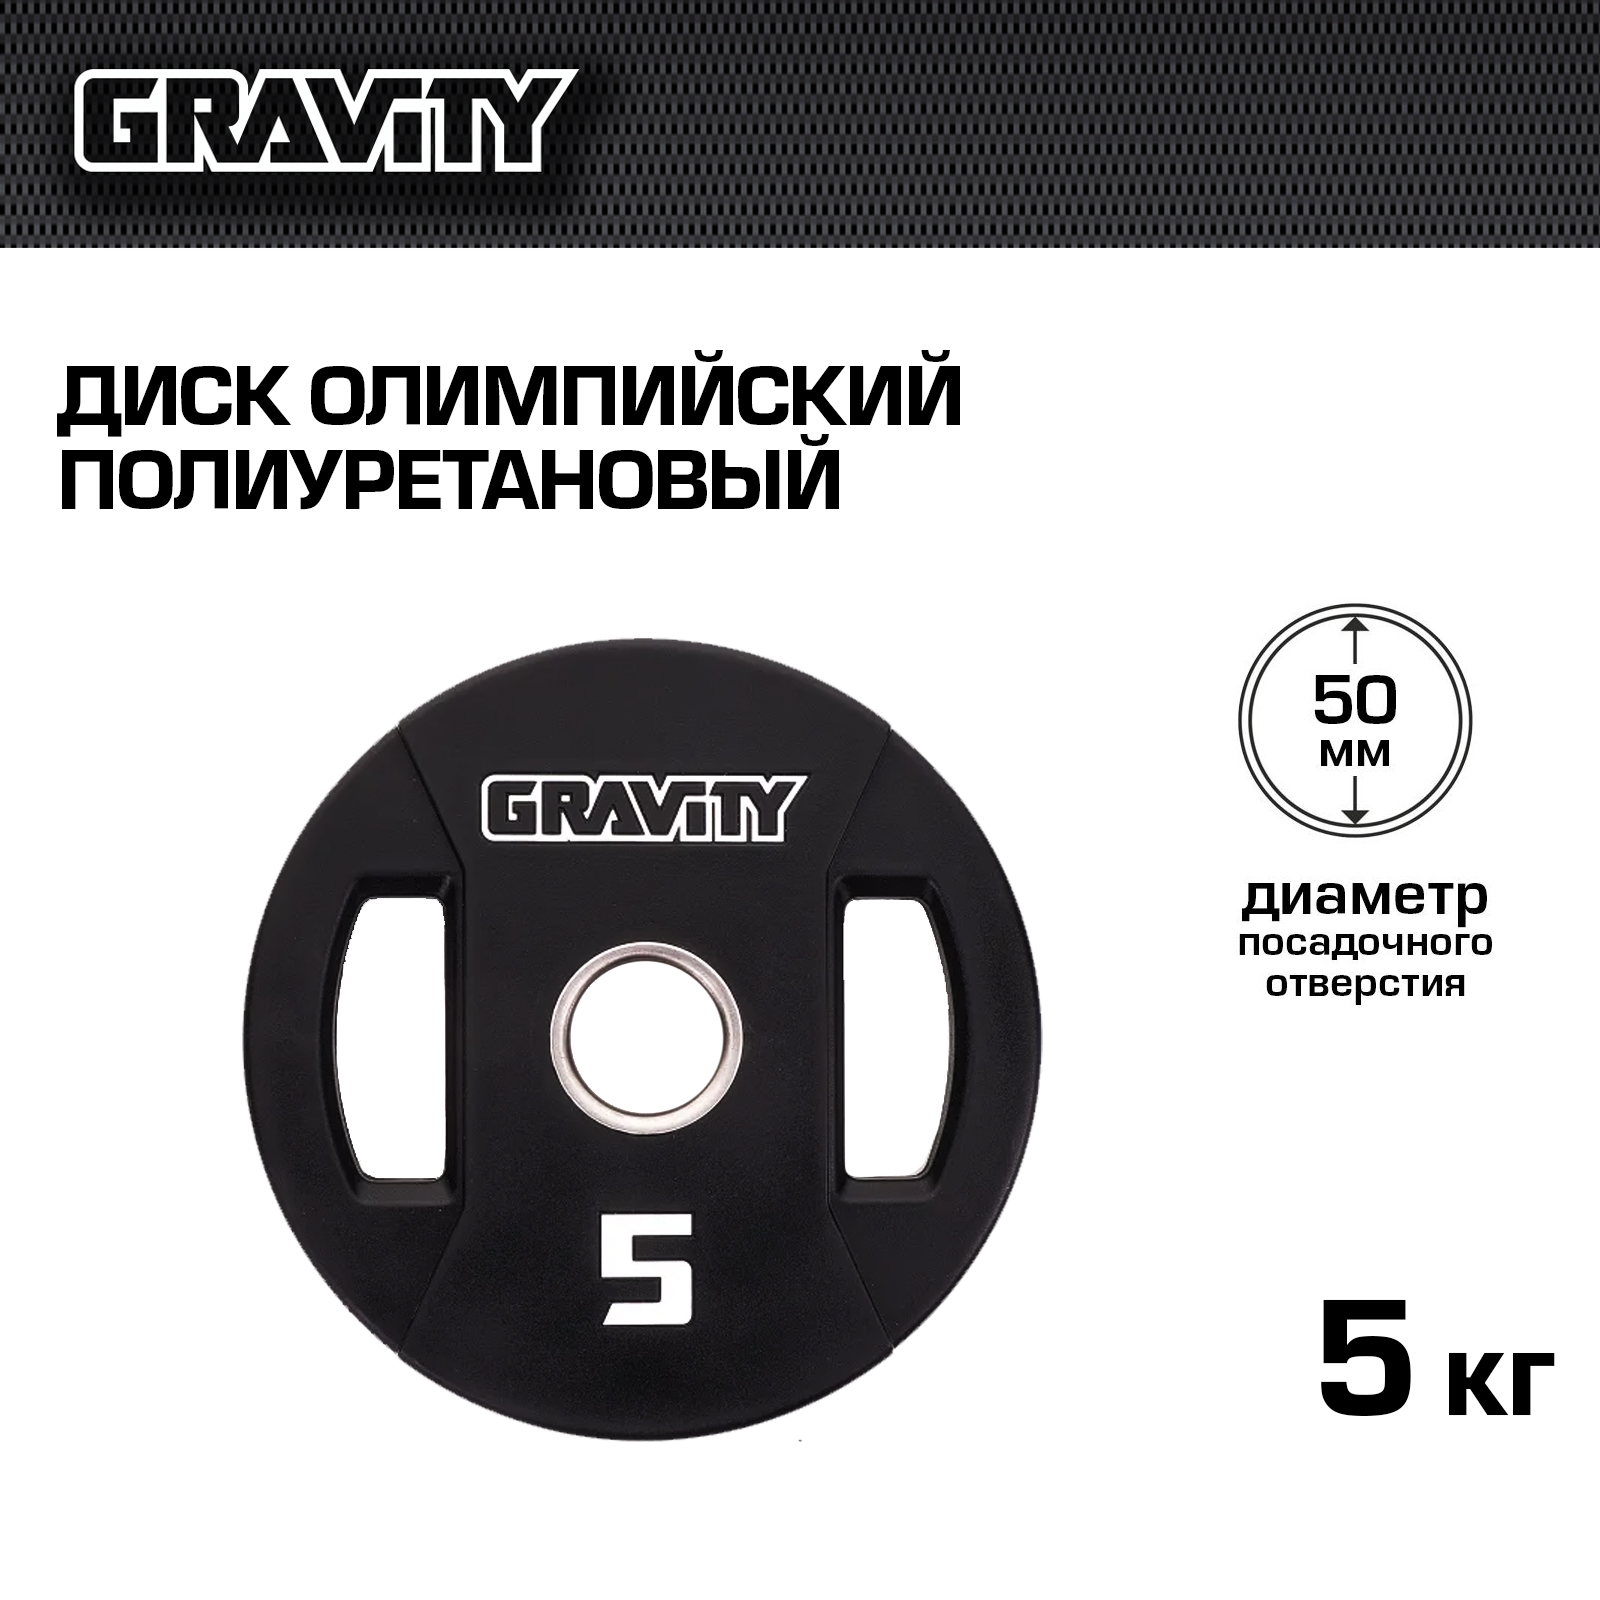 Диск олимпийский Gravity полиуретановый, 5 кг